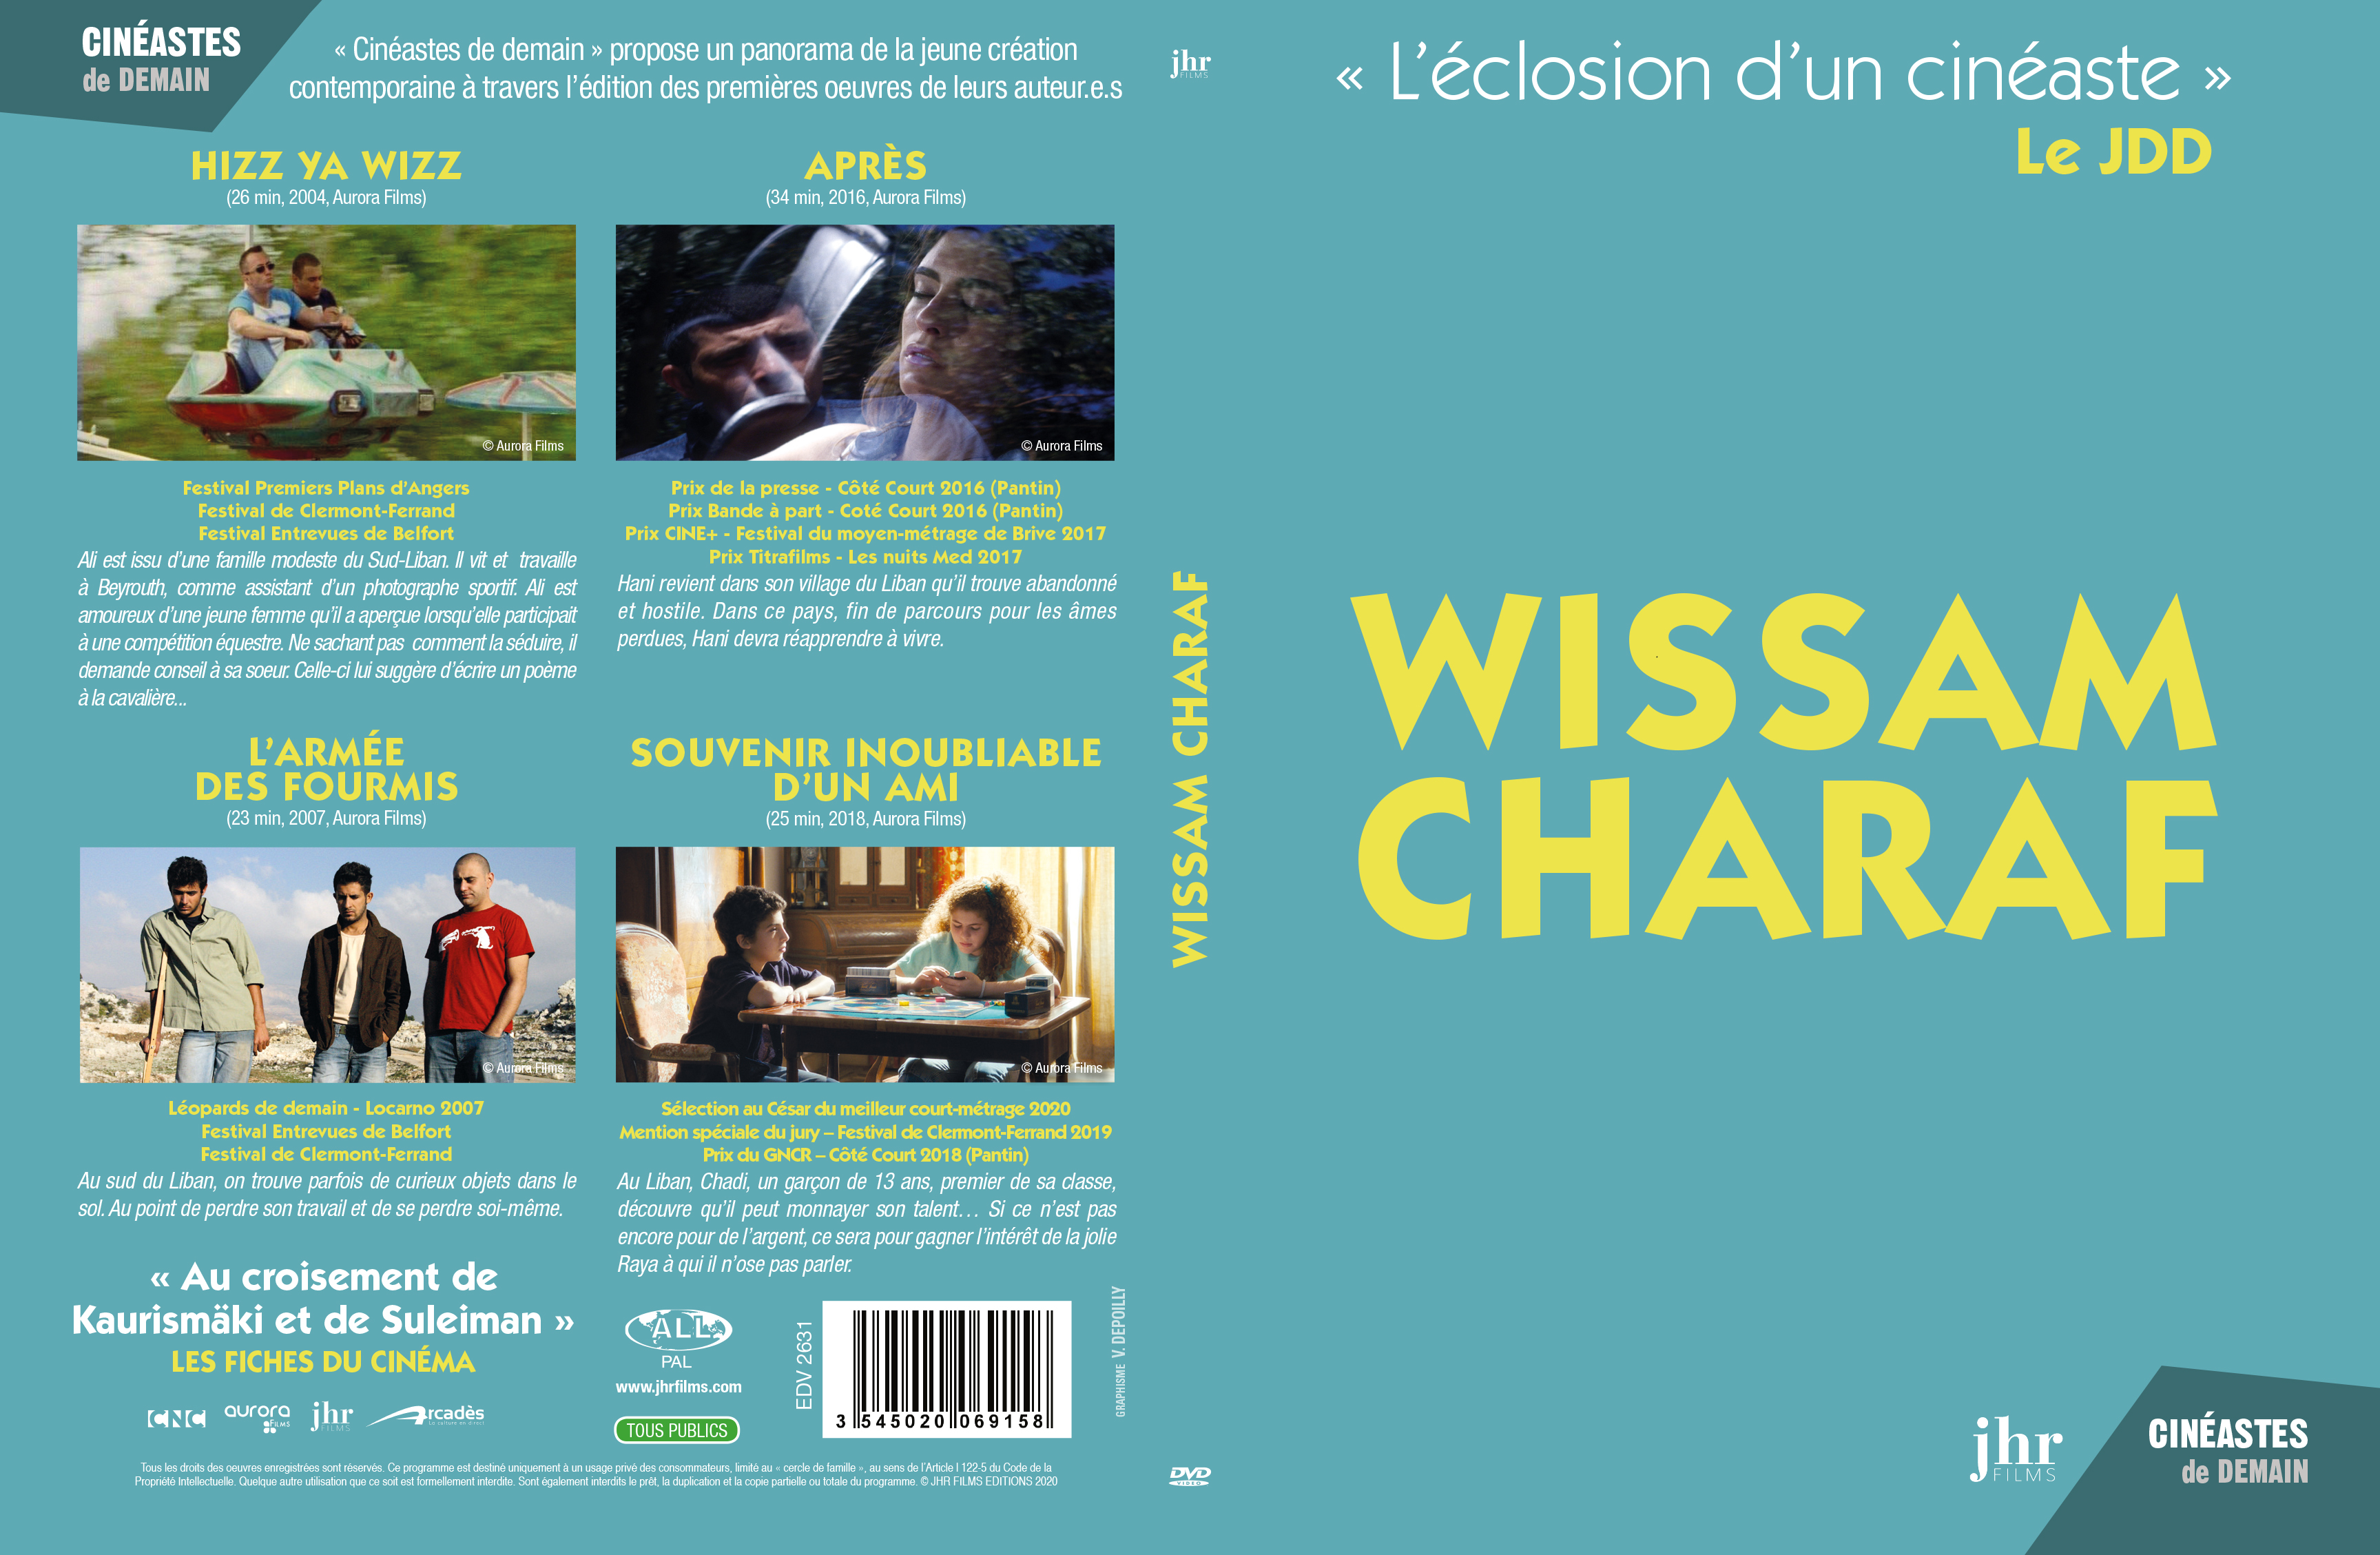 Jaquette DVD Wissam Ccharaf cineastes de demain